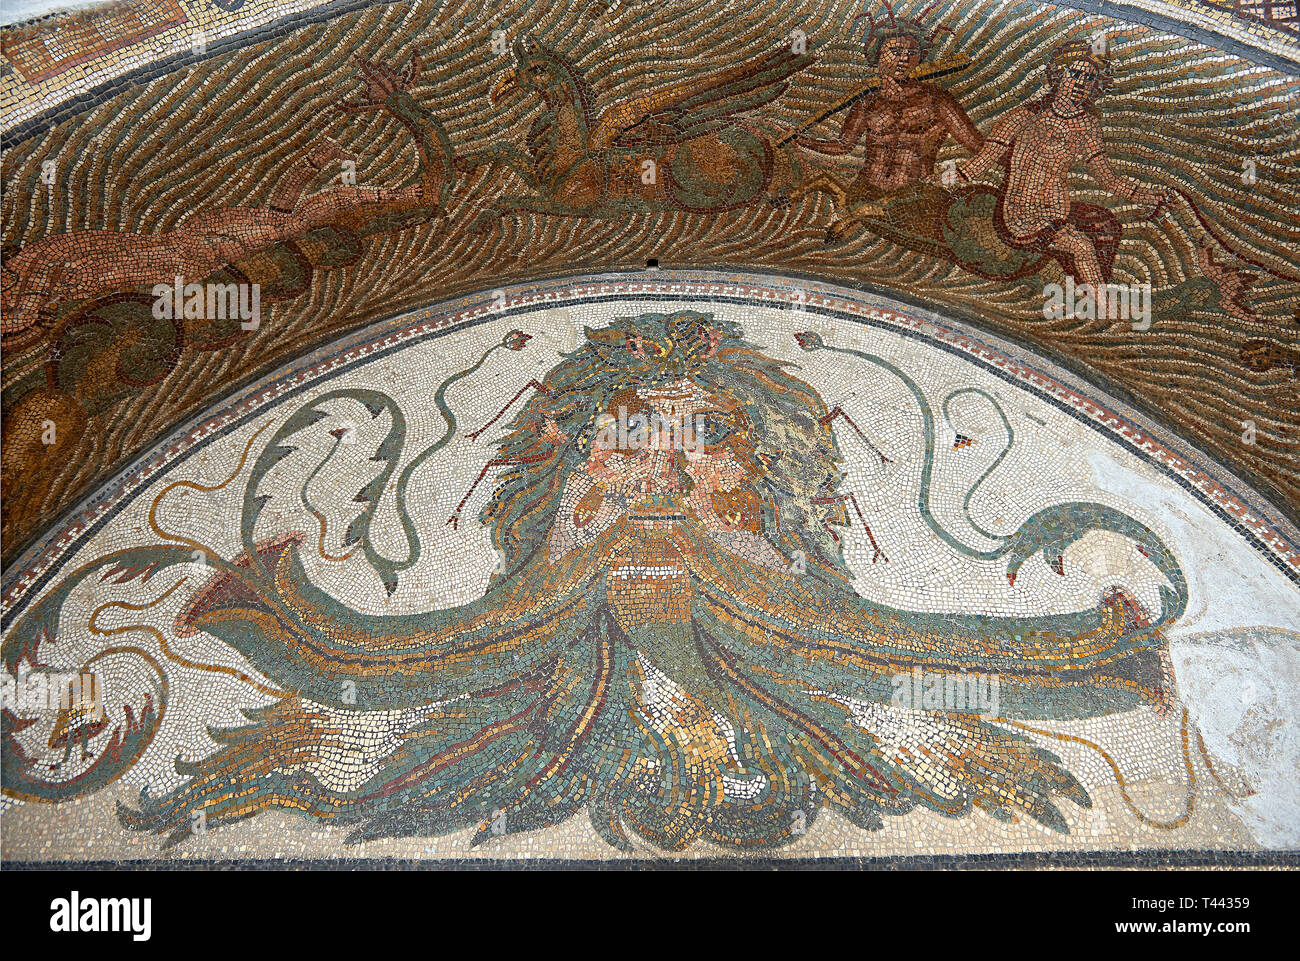 3e siècle mosaïque romaine bassin eau mosaïque représentant la tête de Neptune entouré par la mer des monstres et Nereids (nymphes), et Xenia qui étaient gif Banque D'Images